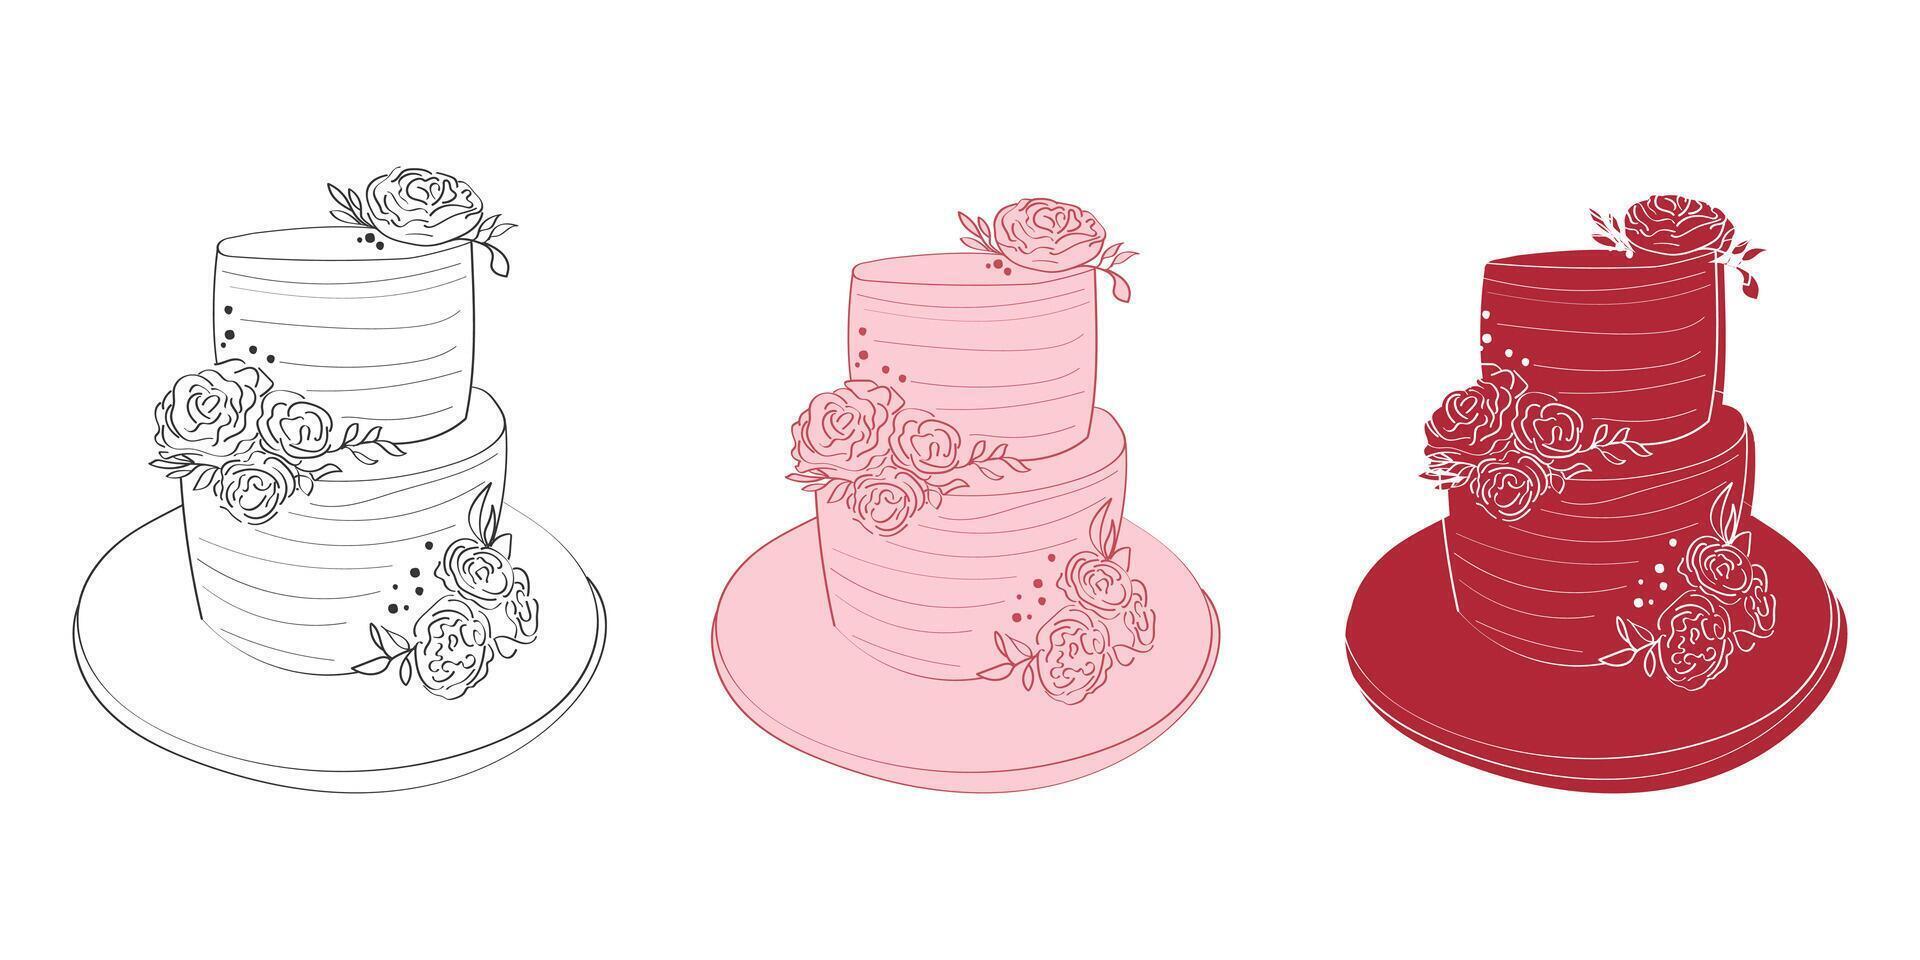 drei deutlich Hochzeit Kuchen von abwechslungsreich Designs und Aromen sind angezeigt auf ein sauber Weiß Hintergrund. jeder Kuchen hat einzigartig Dekorationen und Farben Gastronomie zu anders Vorlieben und Themen vektor